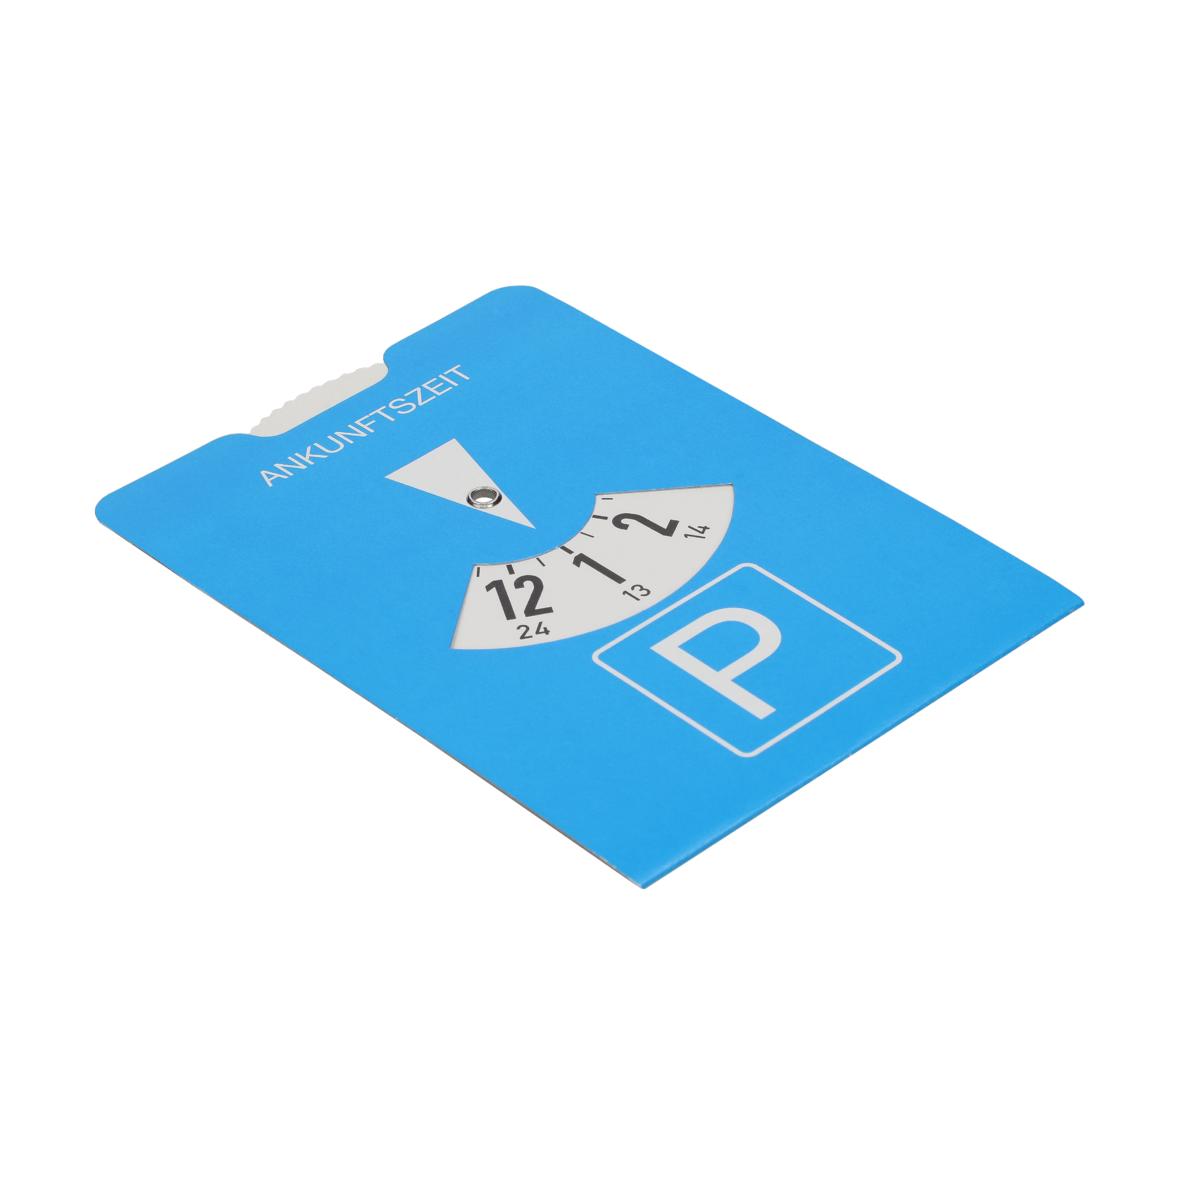 Parkscheibe Karton Eco-Calculator: 24-Stunden Anzeige, und  Verbrauchsrechner Blau/Weiß